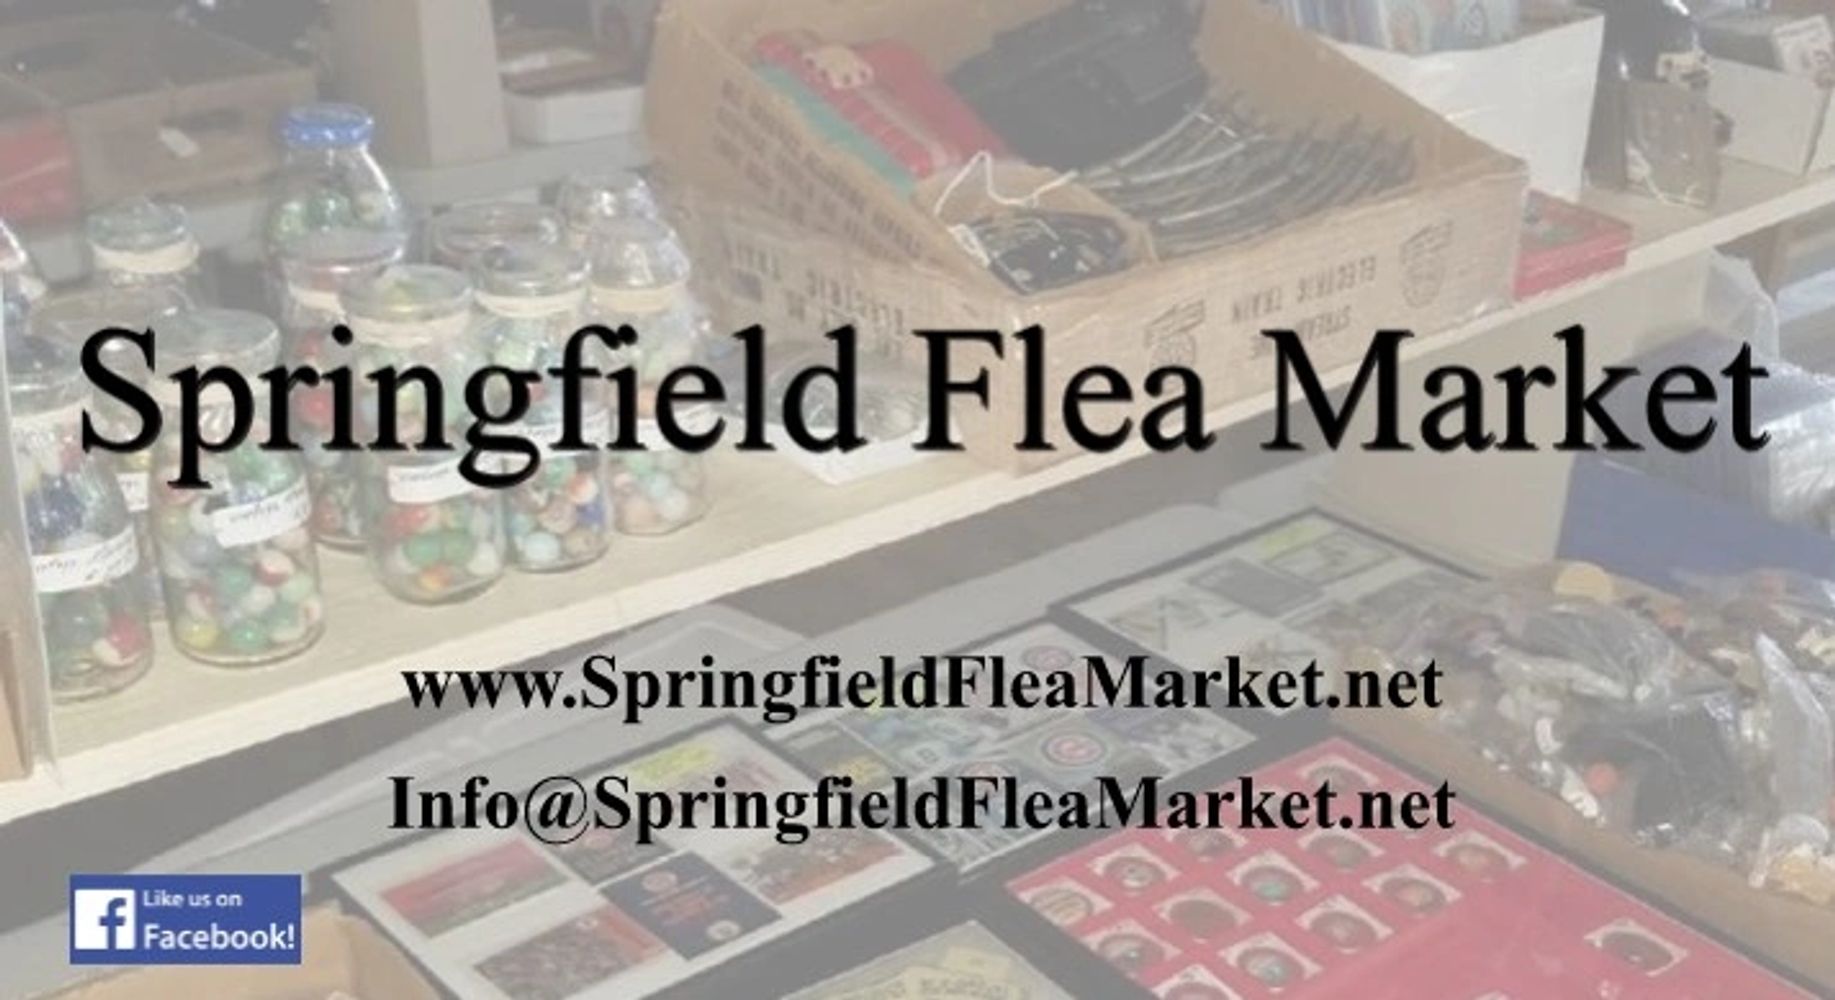 Springfield Flea Market
www.springfieldfleamarket.net
info@springfieldfleamarket.net
